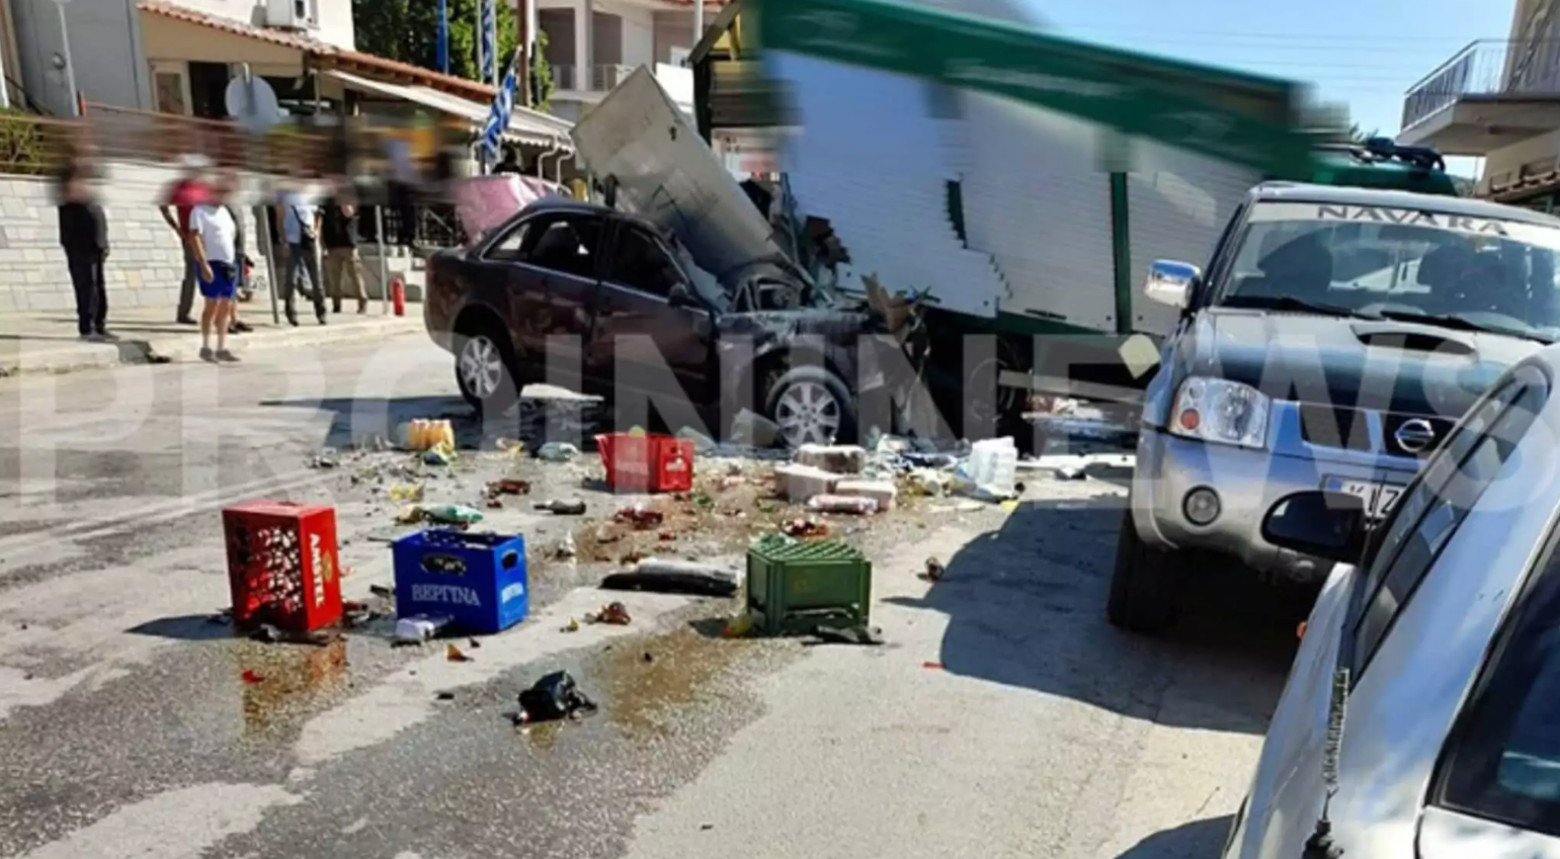 Τραγωδία στην Καβάλα: Αυτοκίνητο έπεσε σε πεζό και οχήματα - Τρεις νεκροί